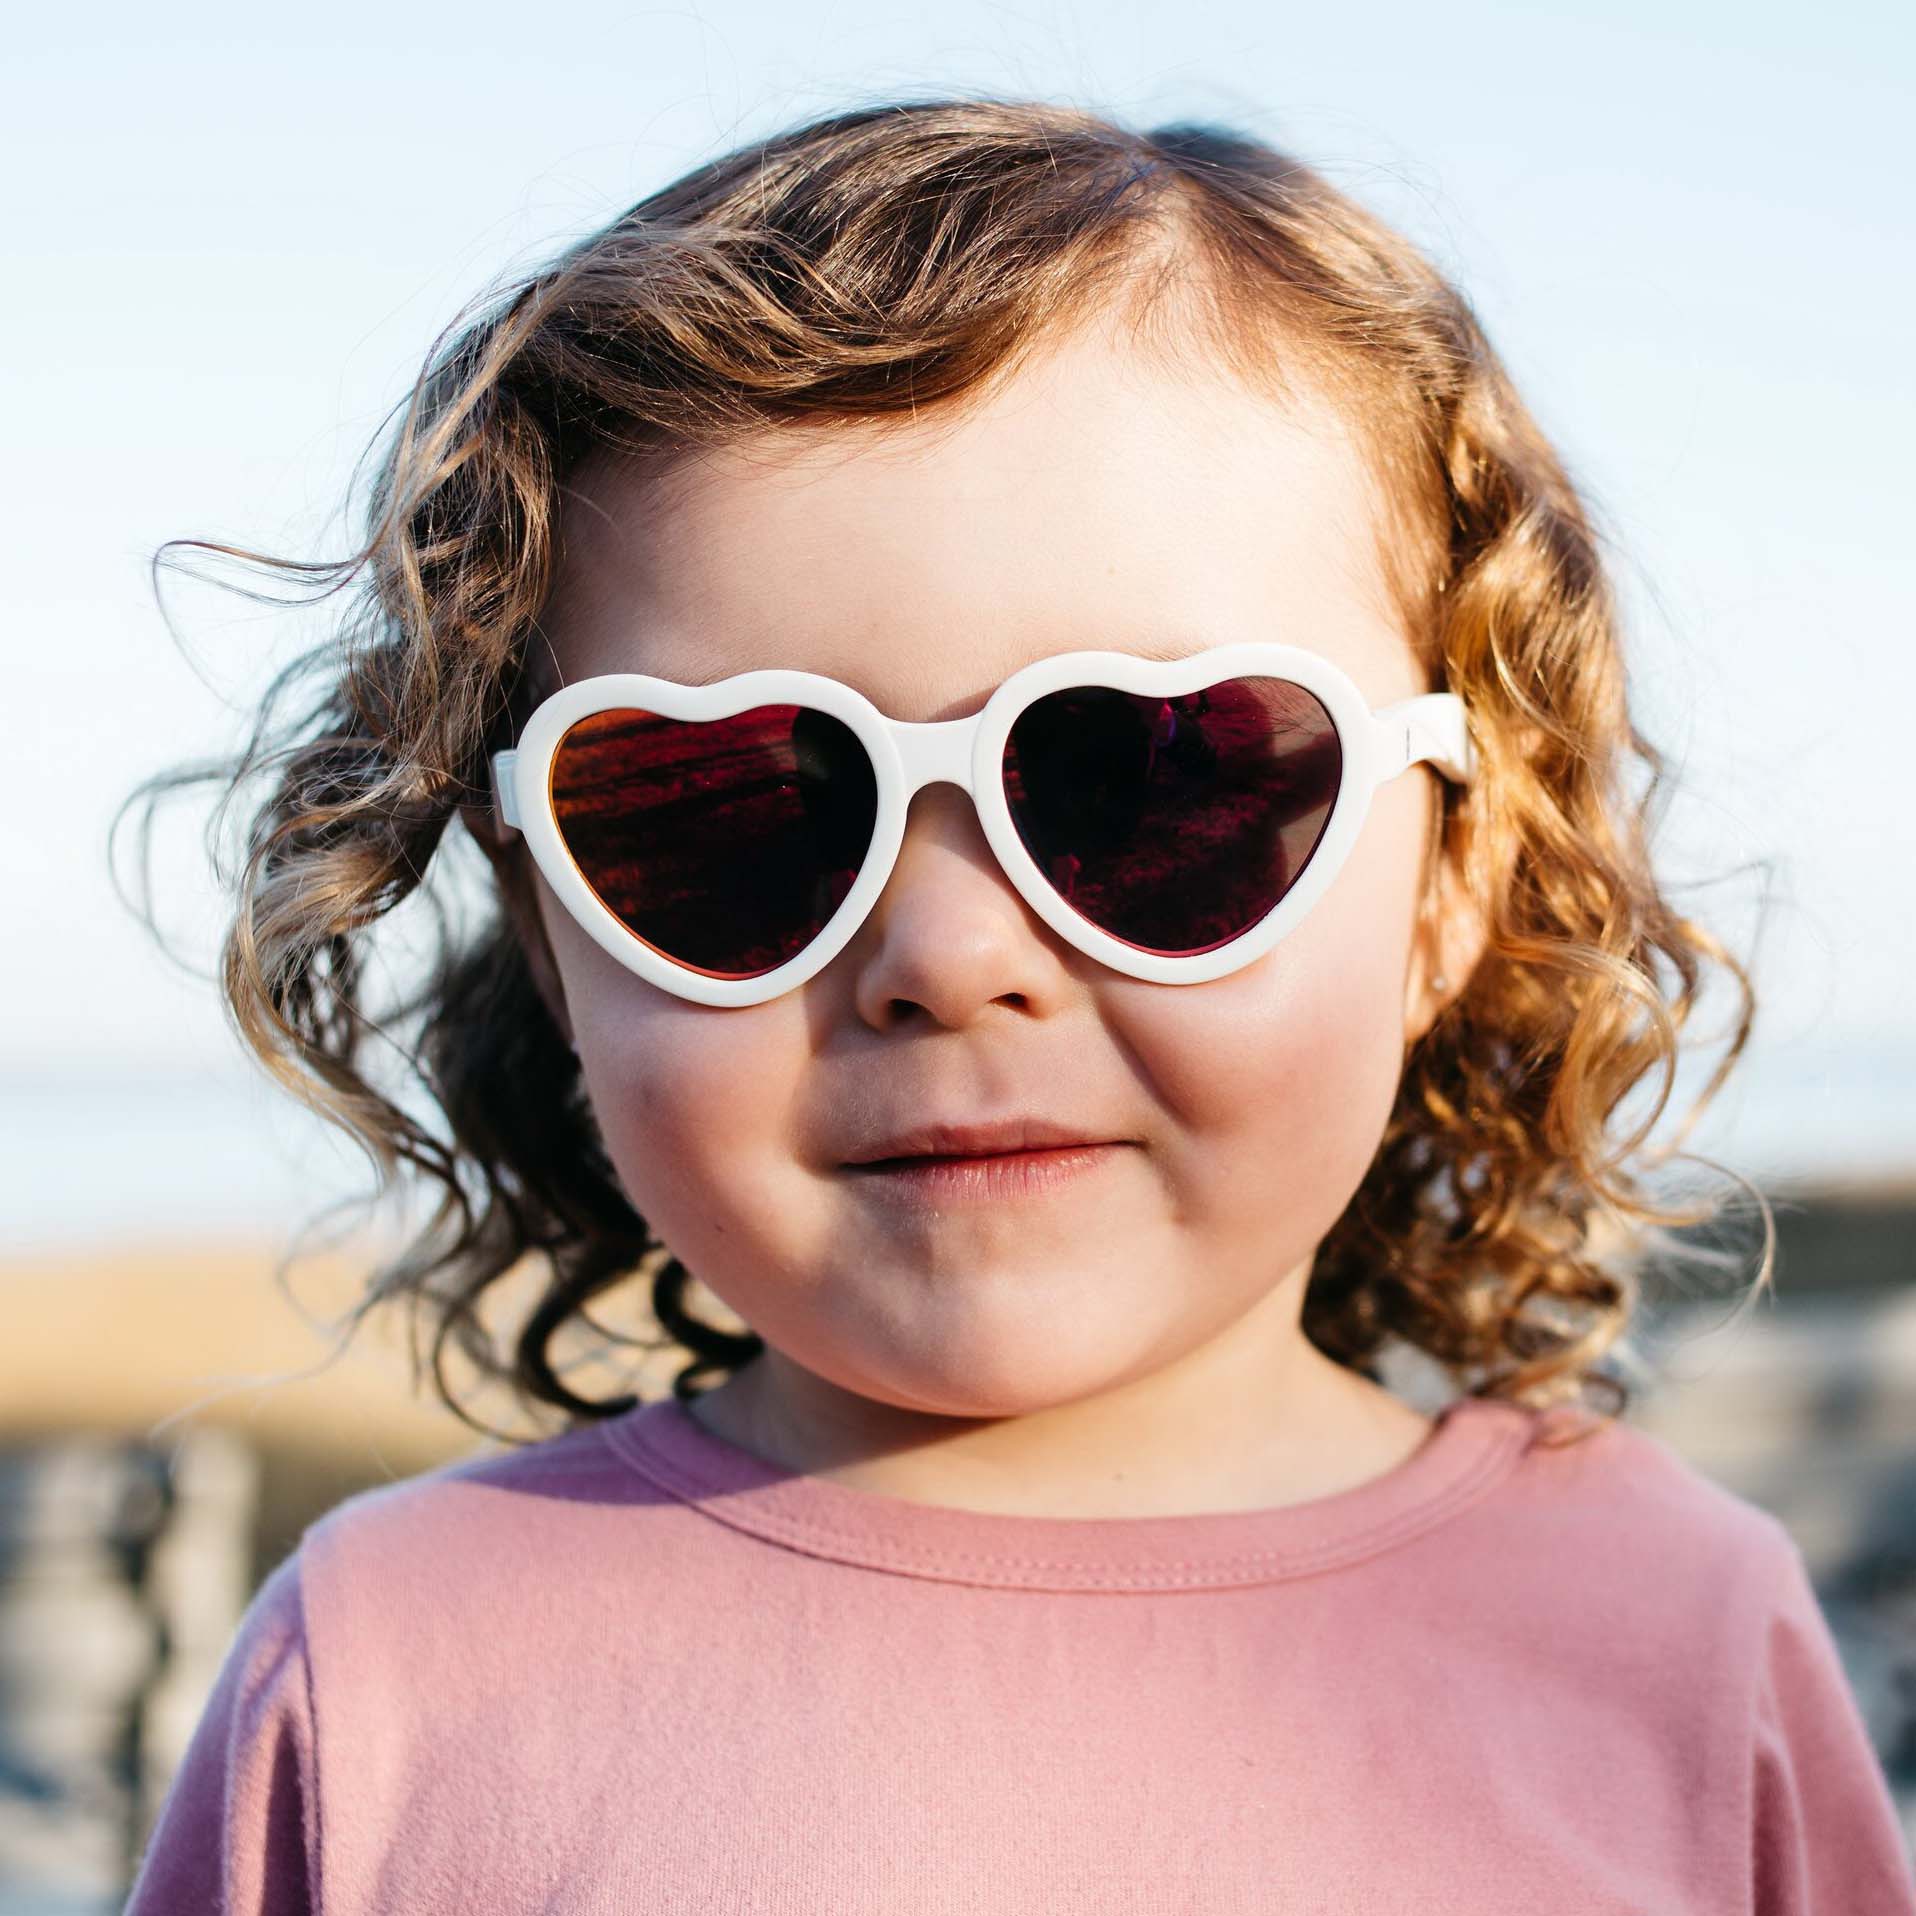 Солнцезащитные очки - Babiators Hearts. Влюбляшки/Sweethearts Junior, белые/розовые зеркальные,  